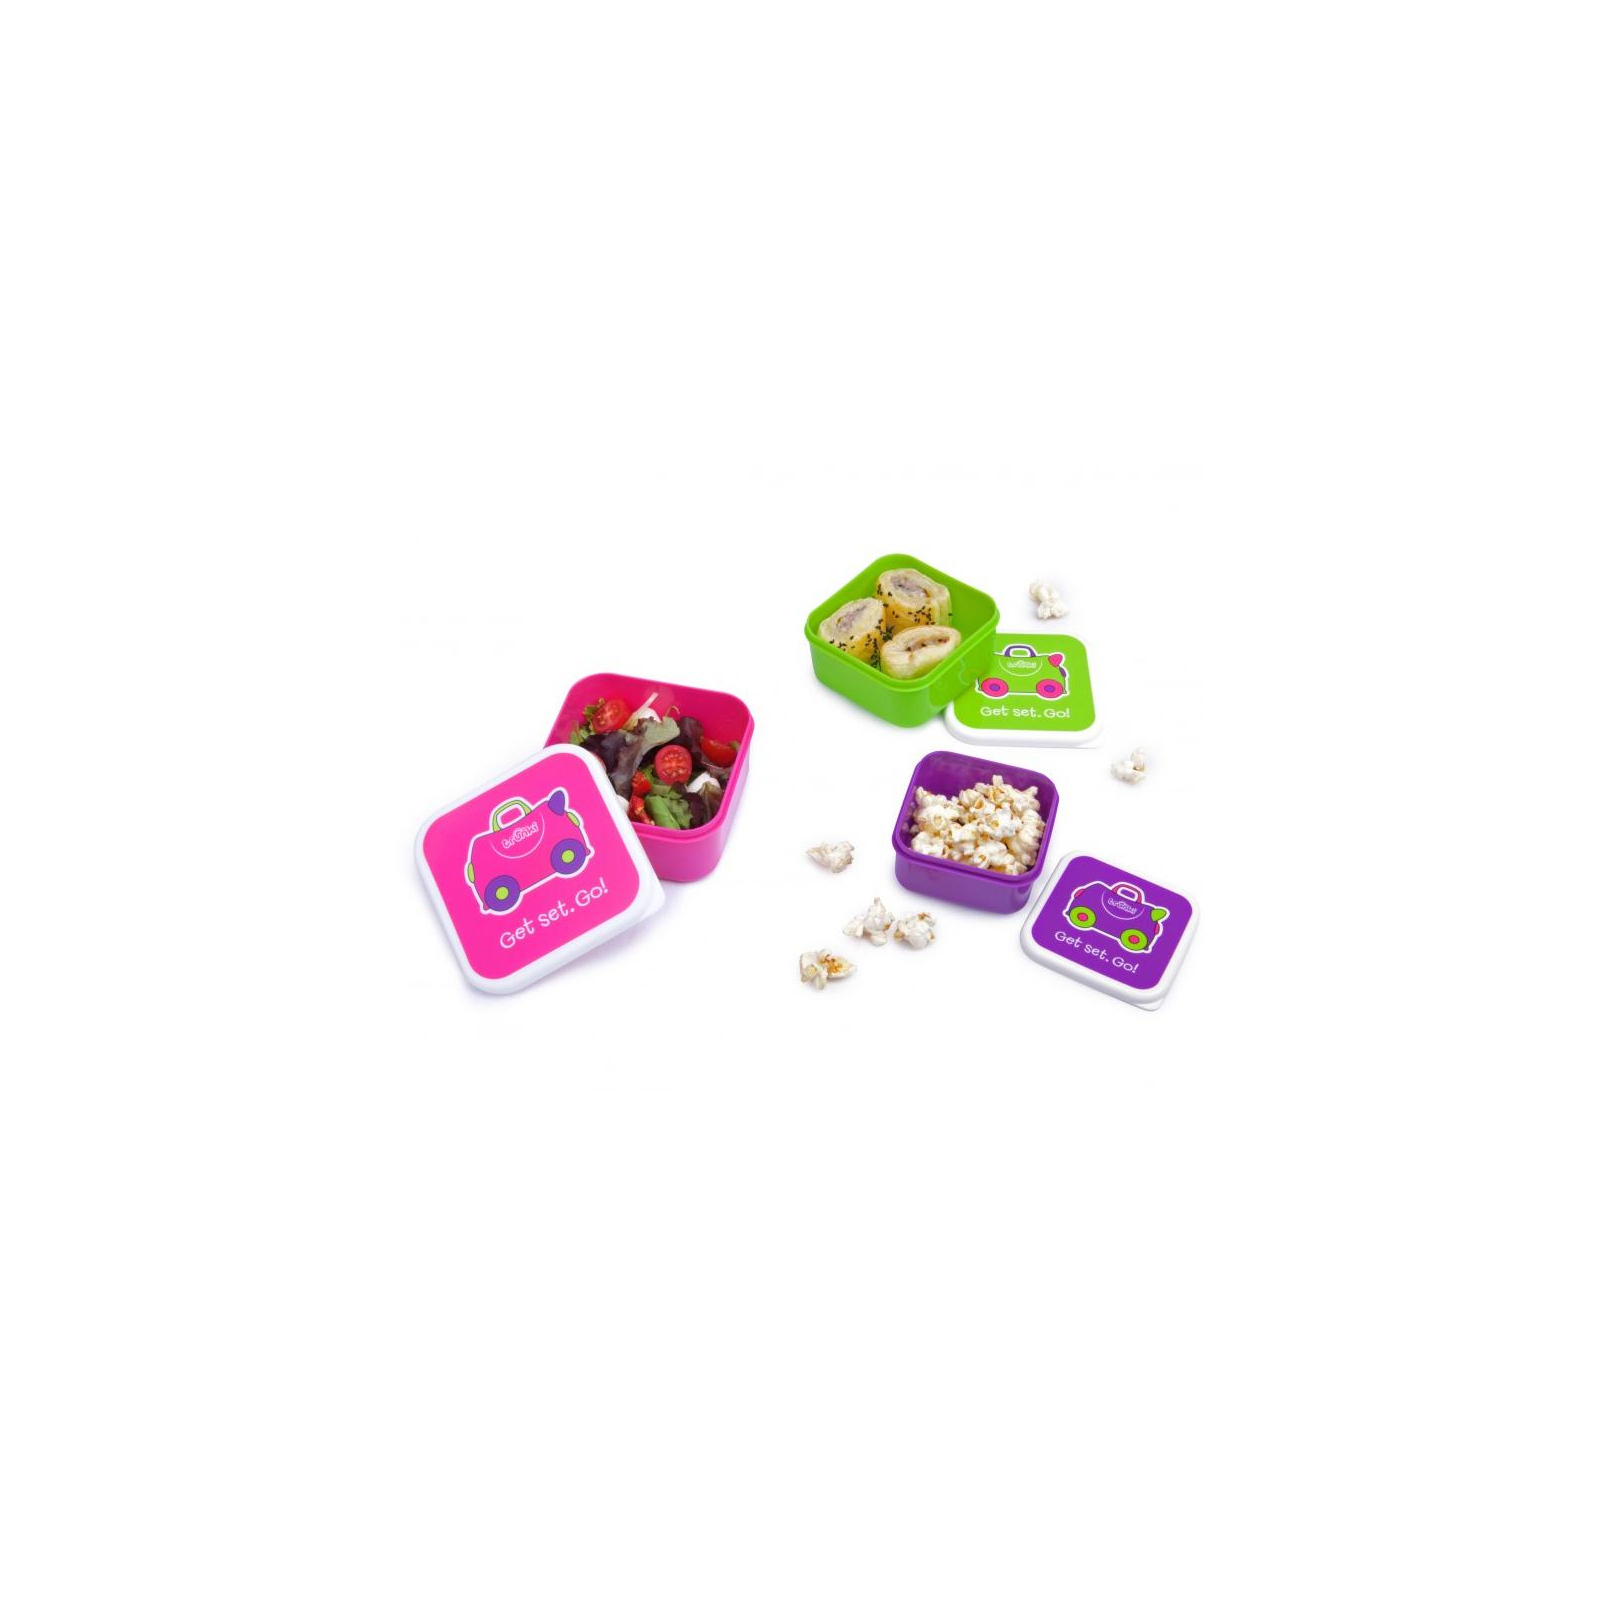 Контейнер для хранения продуктов Trunki Набор (малиновый, салатовый, фиолетовый) (0300-GB01) изображение 6